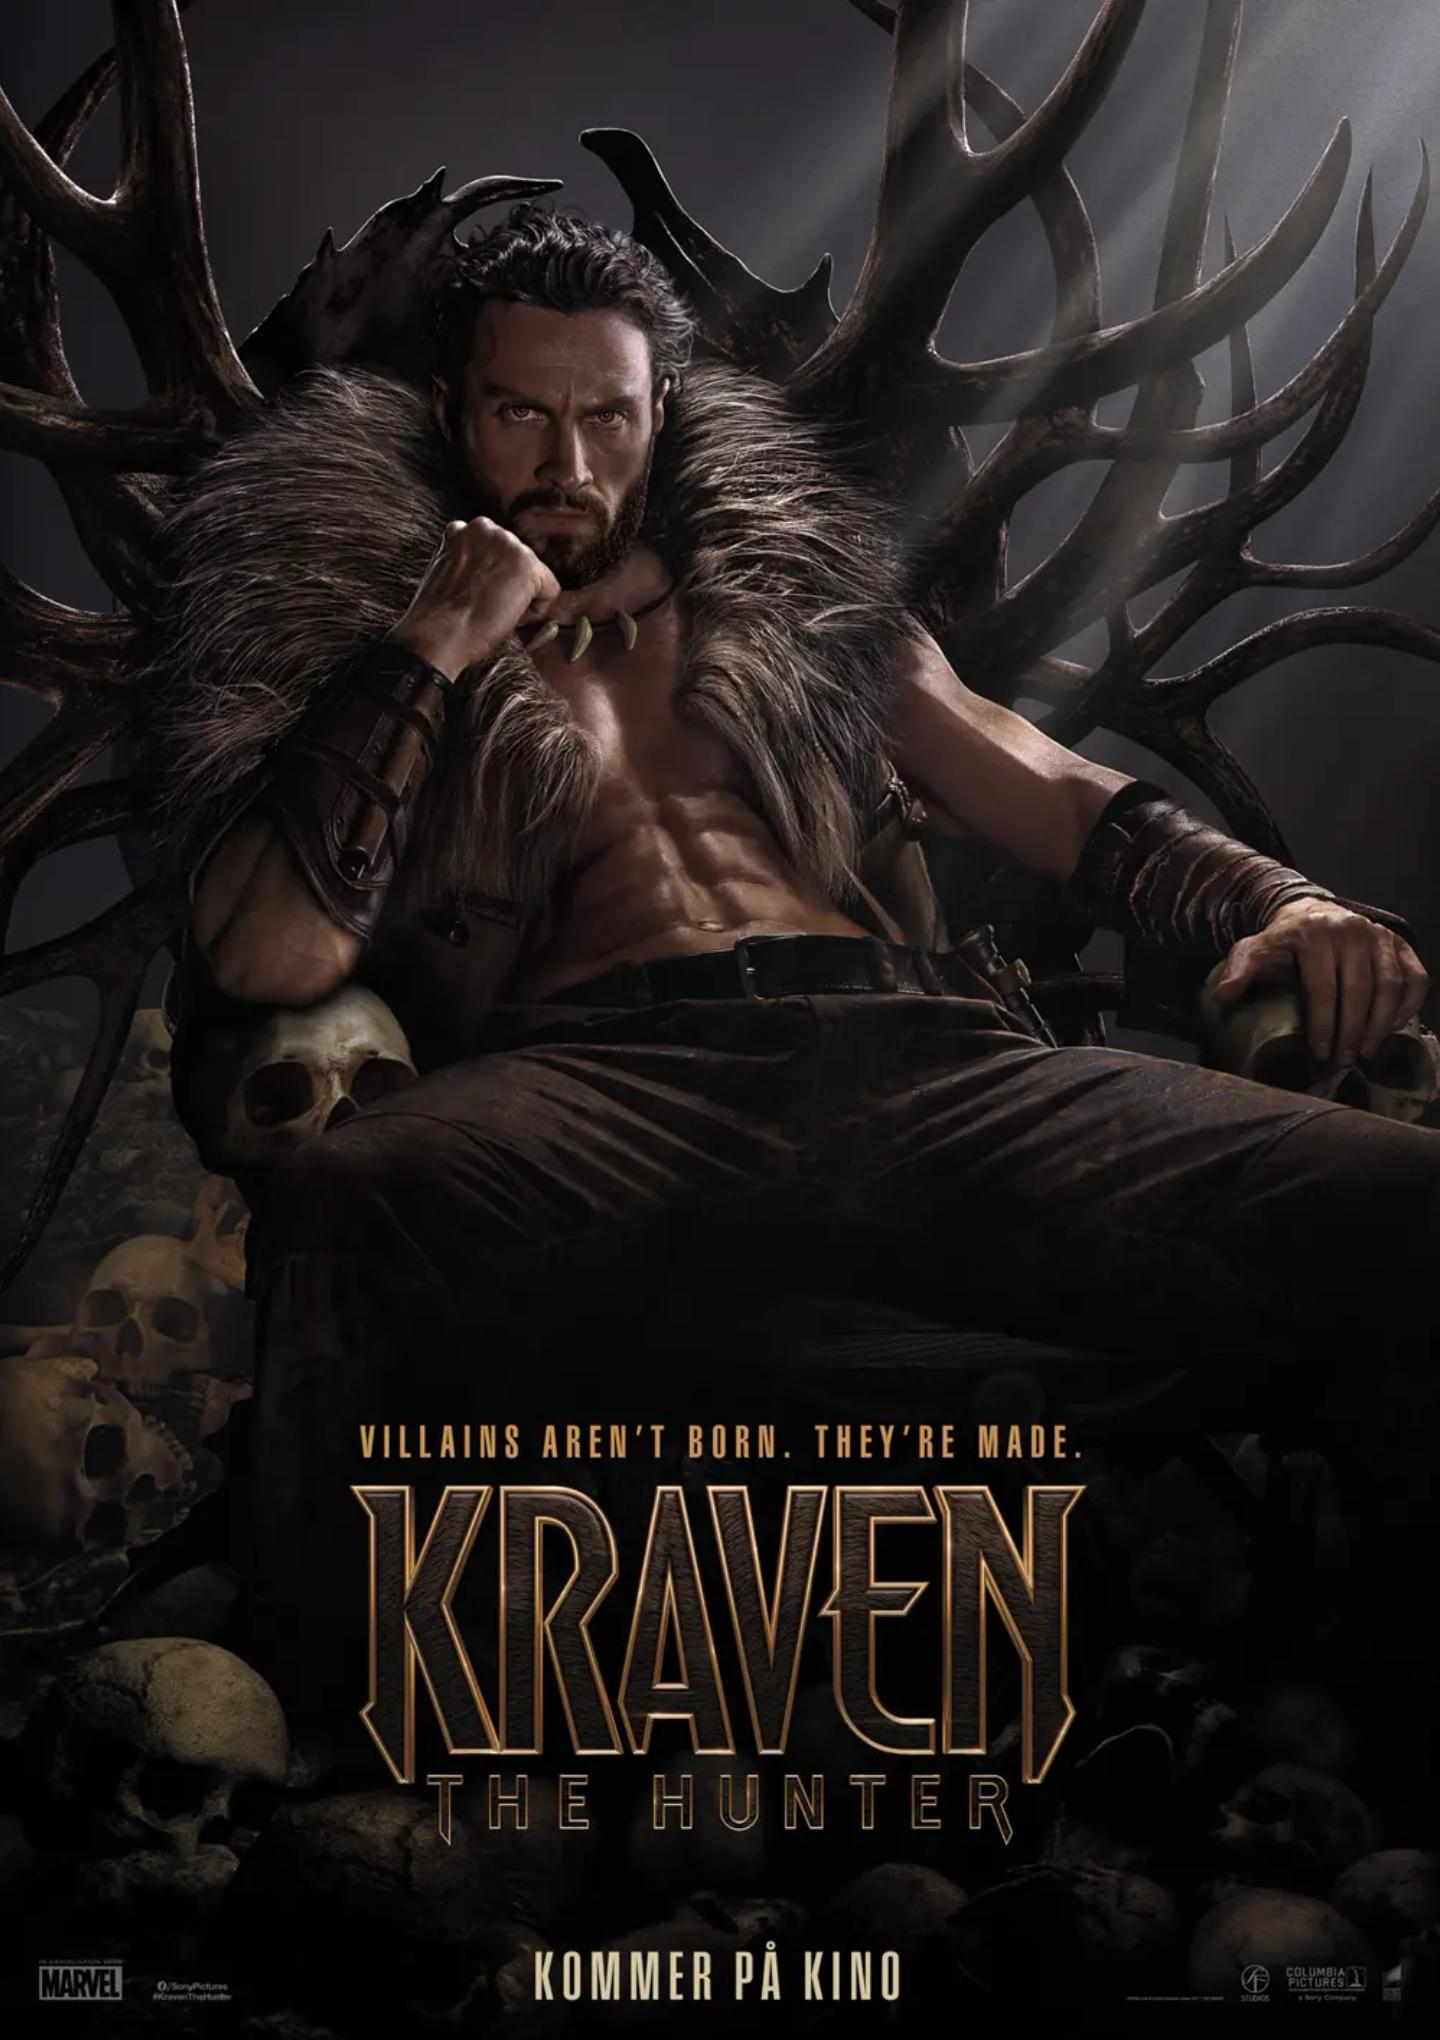 Plakat for 'Kraven the Hunter'